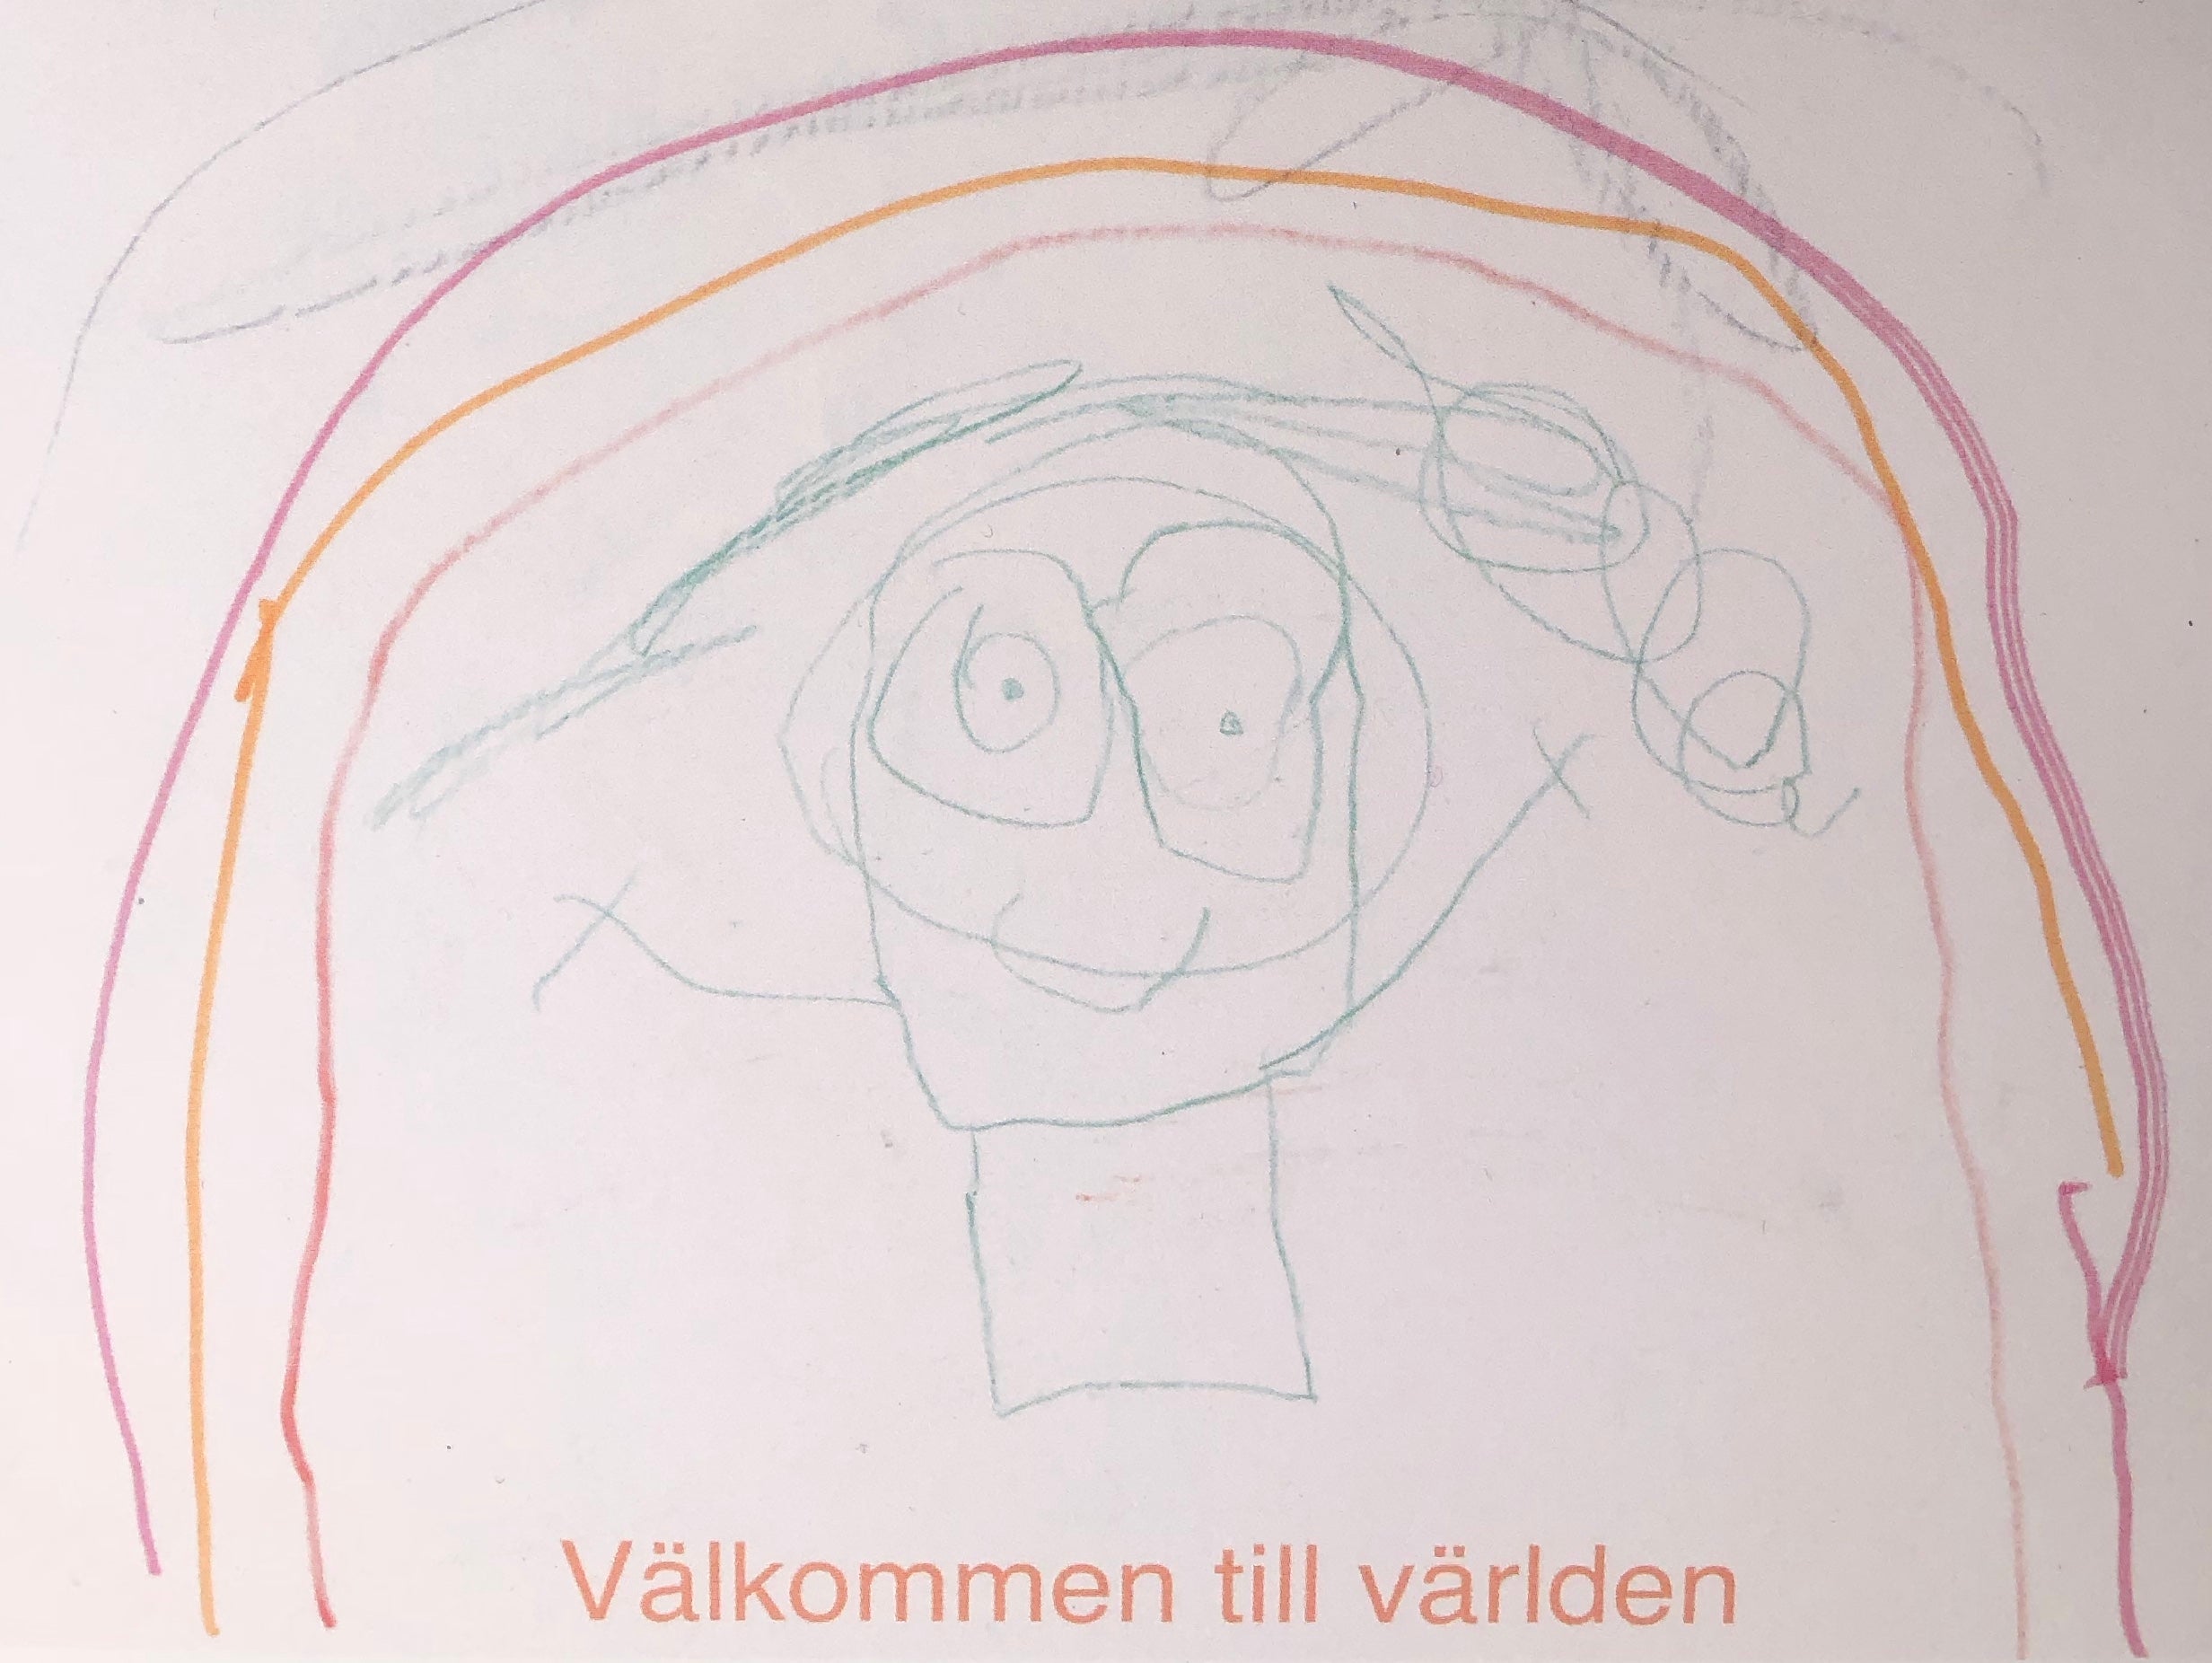 Ett kort skapat av våra unga konstnärer, med texten "Välkommen till världen". Motivet är en barn med långt hår som står under en rosa/orange regnbåge.